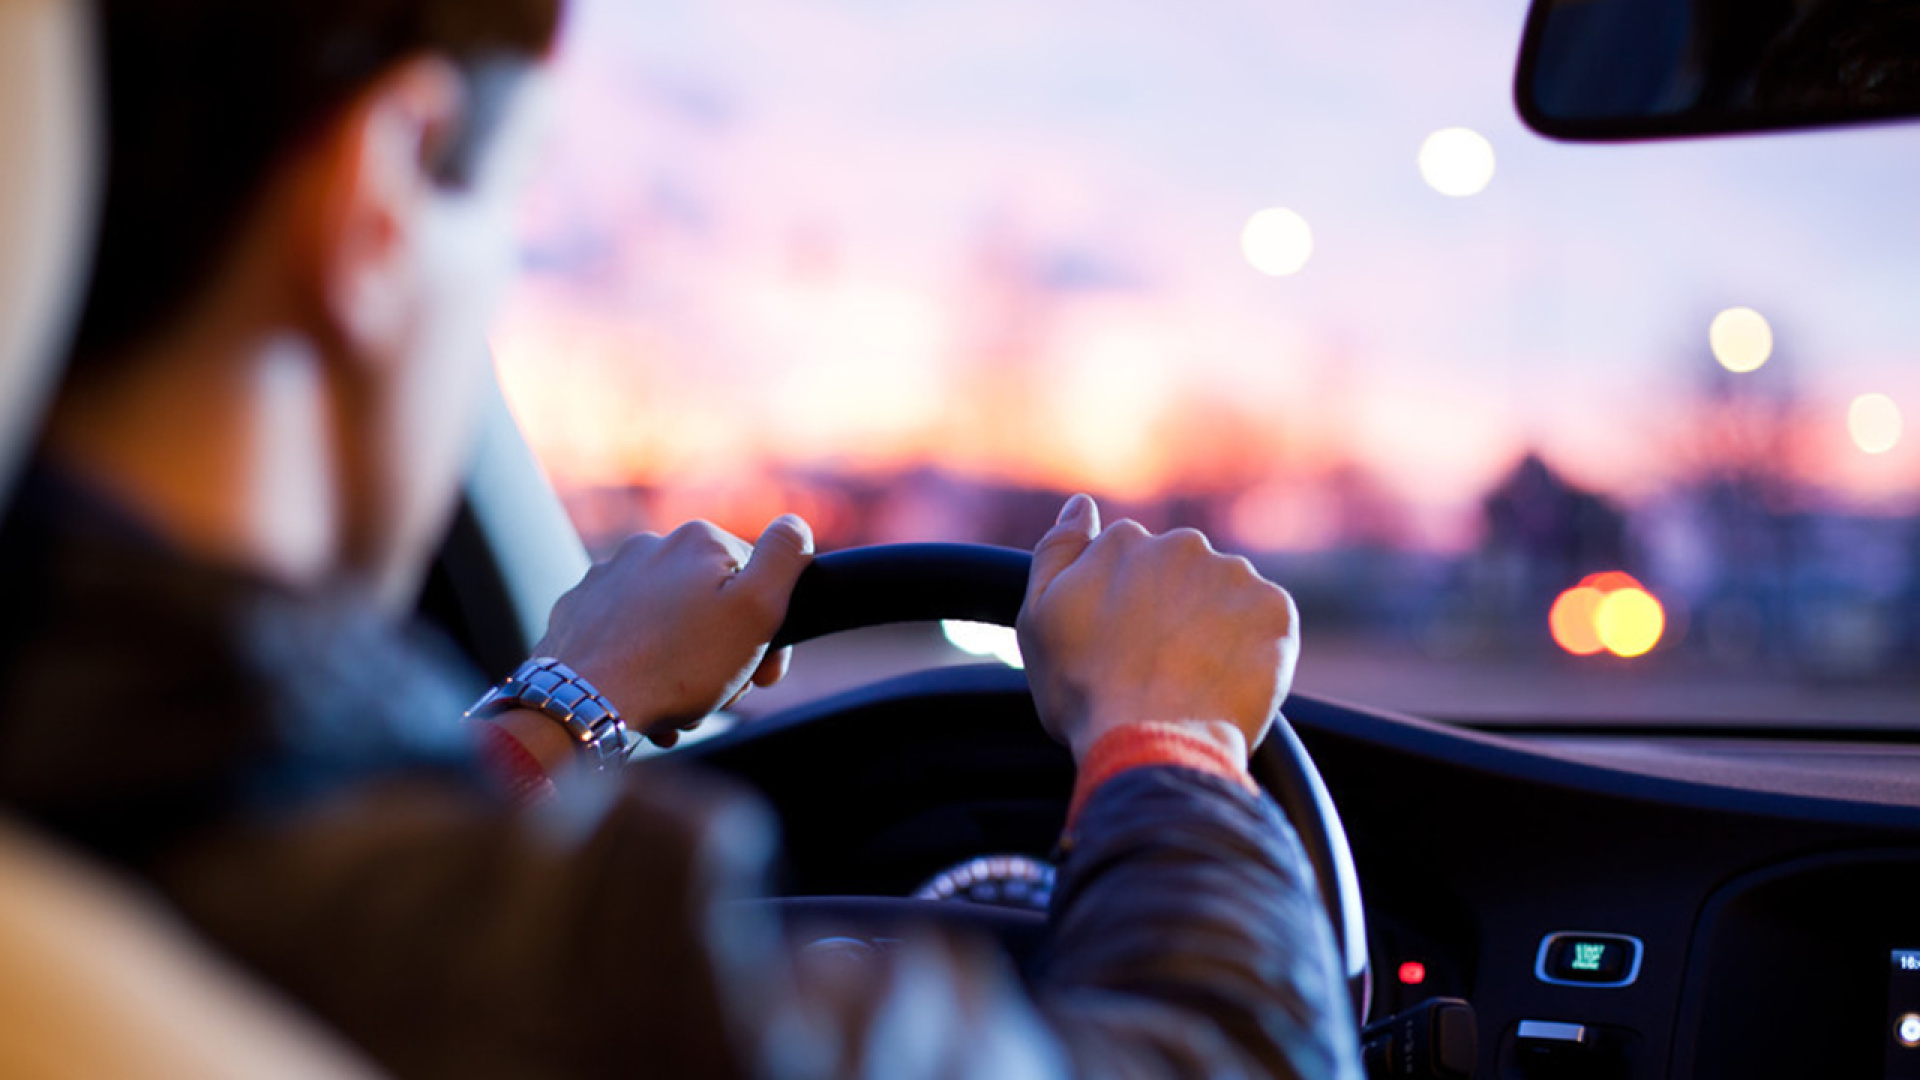 干货:老司机给新手总结的八条重要的驾车好习惯!